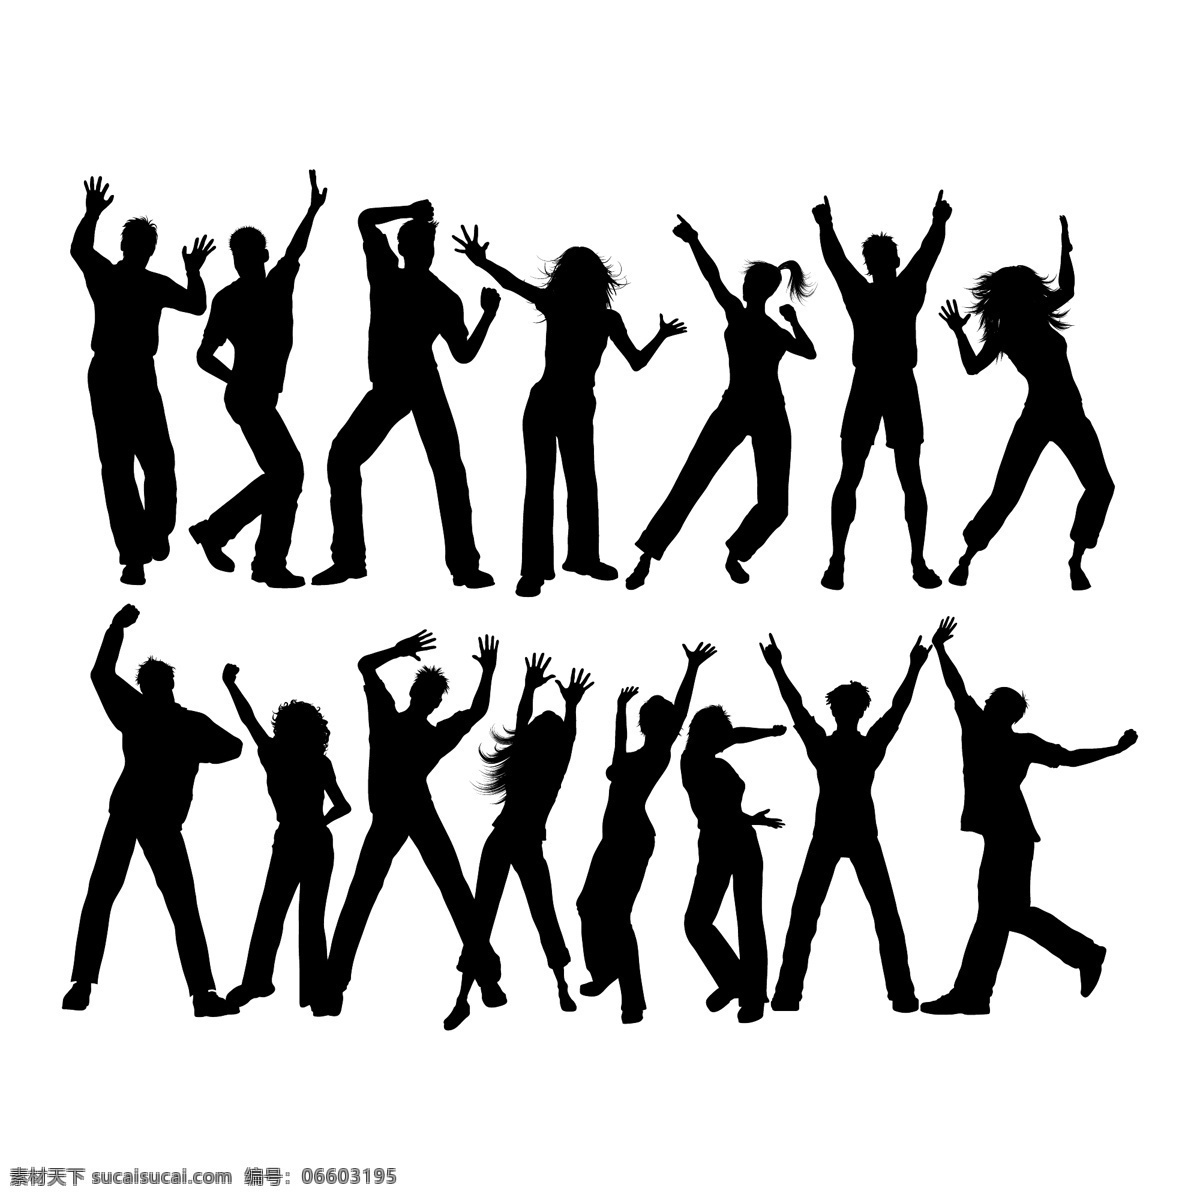 很多 人 跳舞 剪影 音乐 聚会 男人 舞蹈 轮廓 朋友 庆祝 情侣 迪斯科 团队 男孩 人群 团体 女性 青年 白色